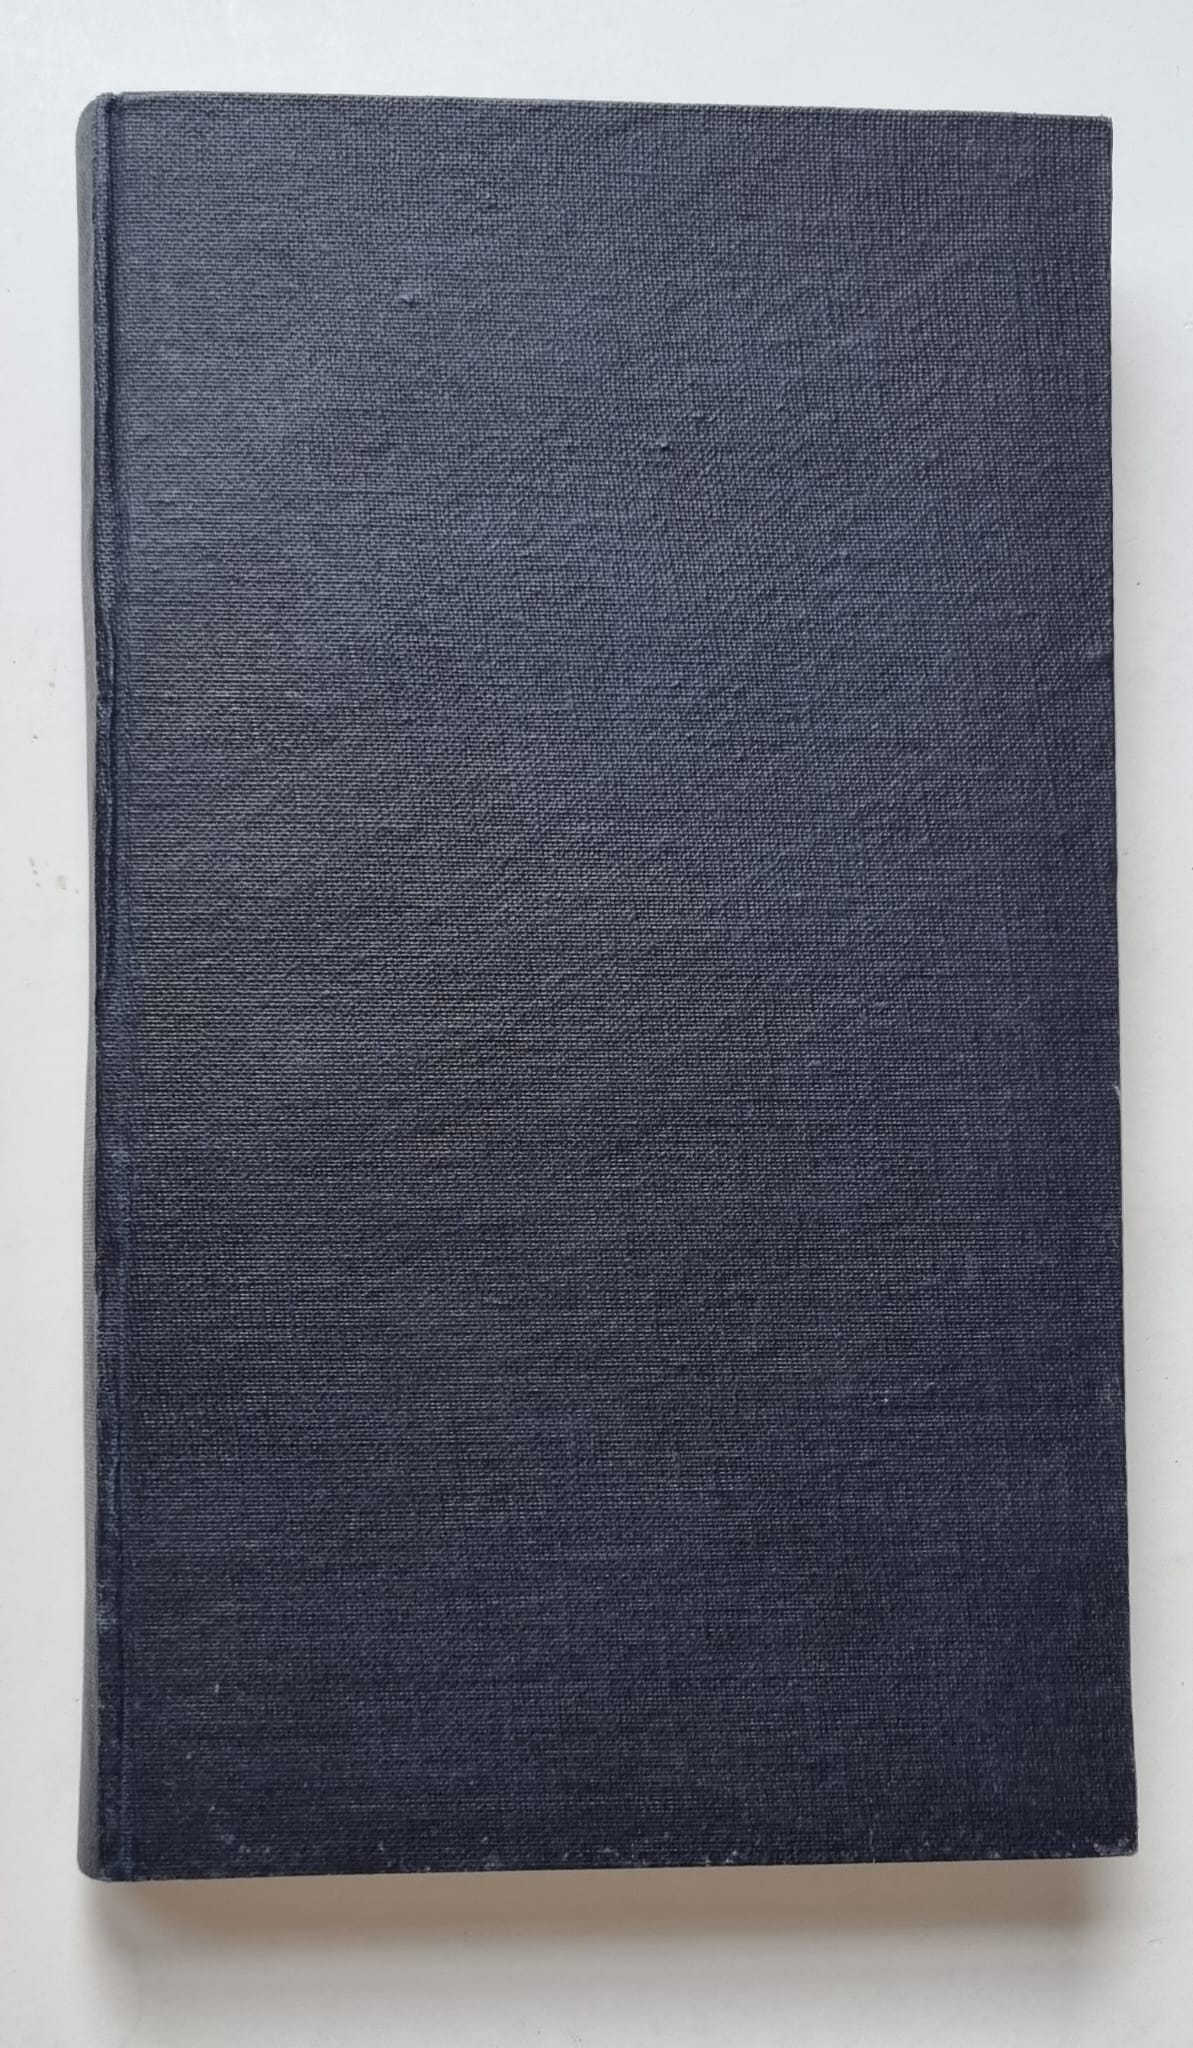 [Travel book Italy, Rome, 1826] Aanteekeningen van C. Kruseman betrekkelyk deszelfs kunstreis en verblijf in Italie, verzameld en uitgegeven door A. Elink Sterk Jr. 's-Gravenhage, de Visser, 1826., 8+228+(1) pp.